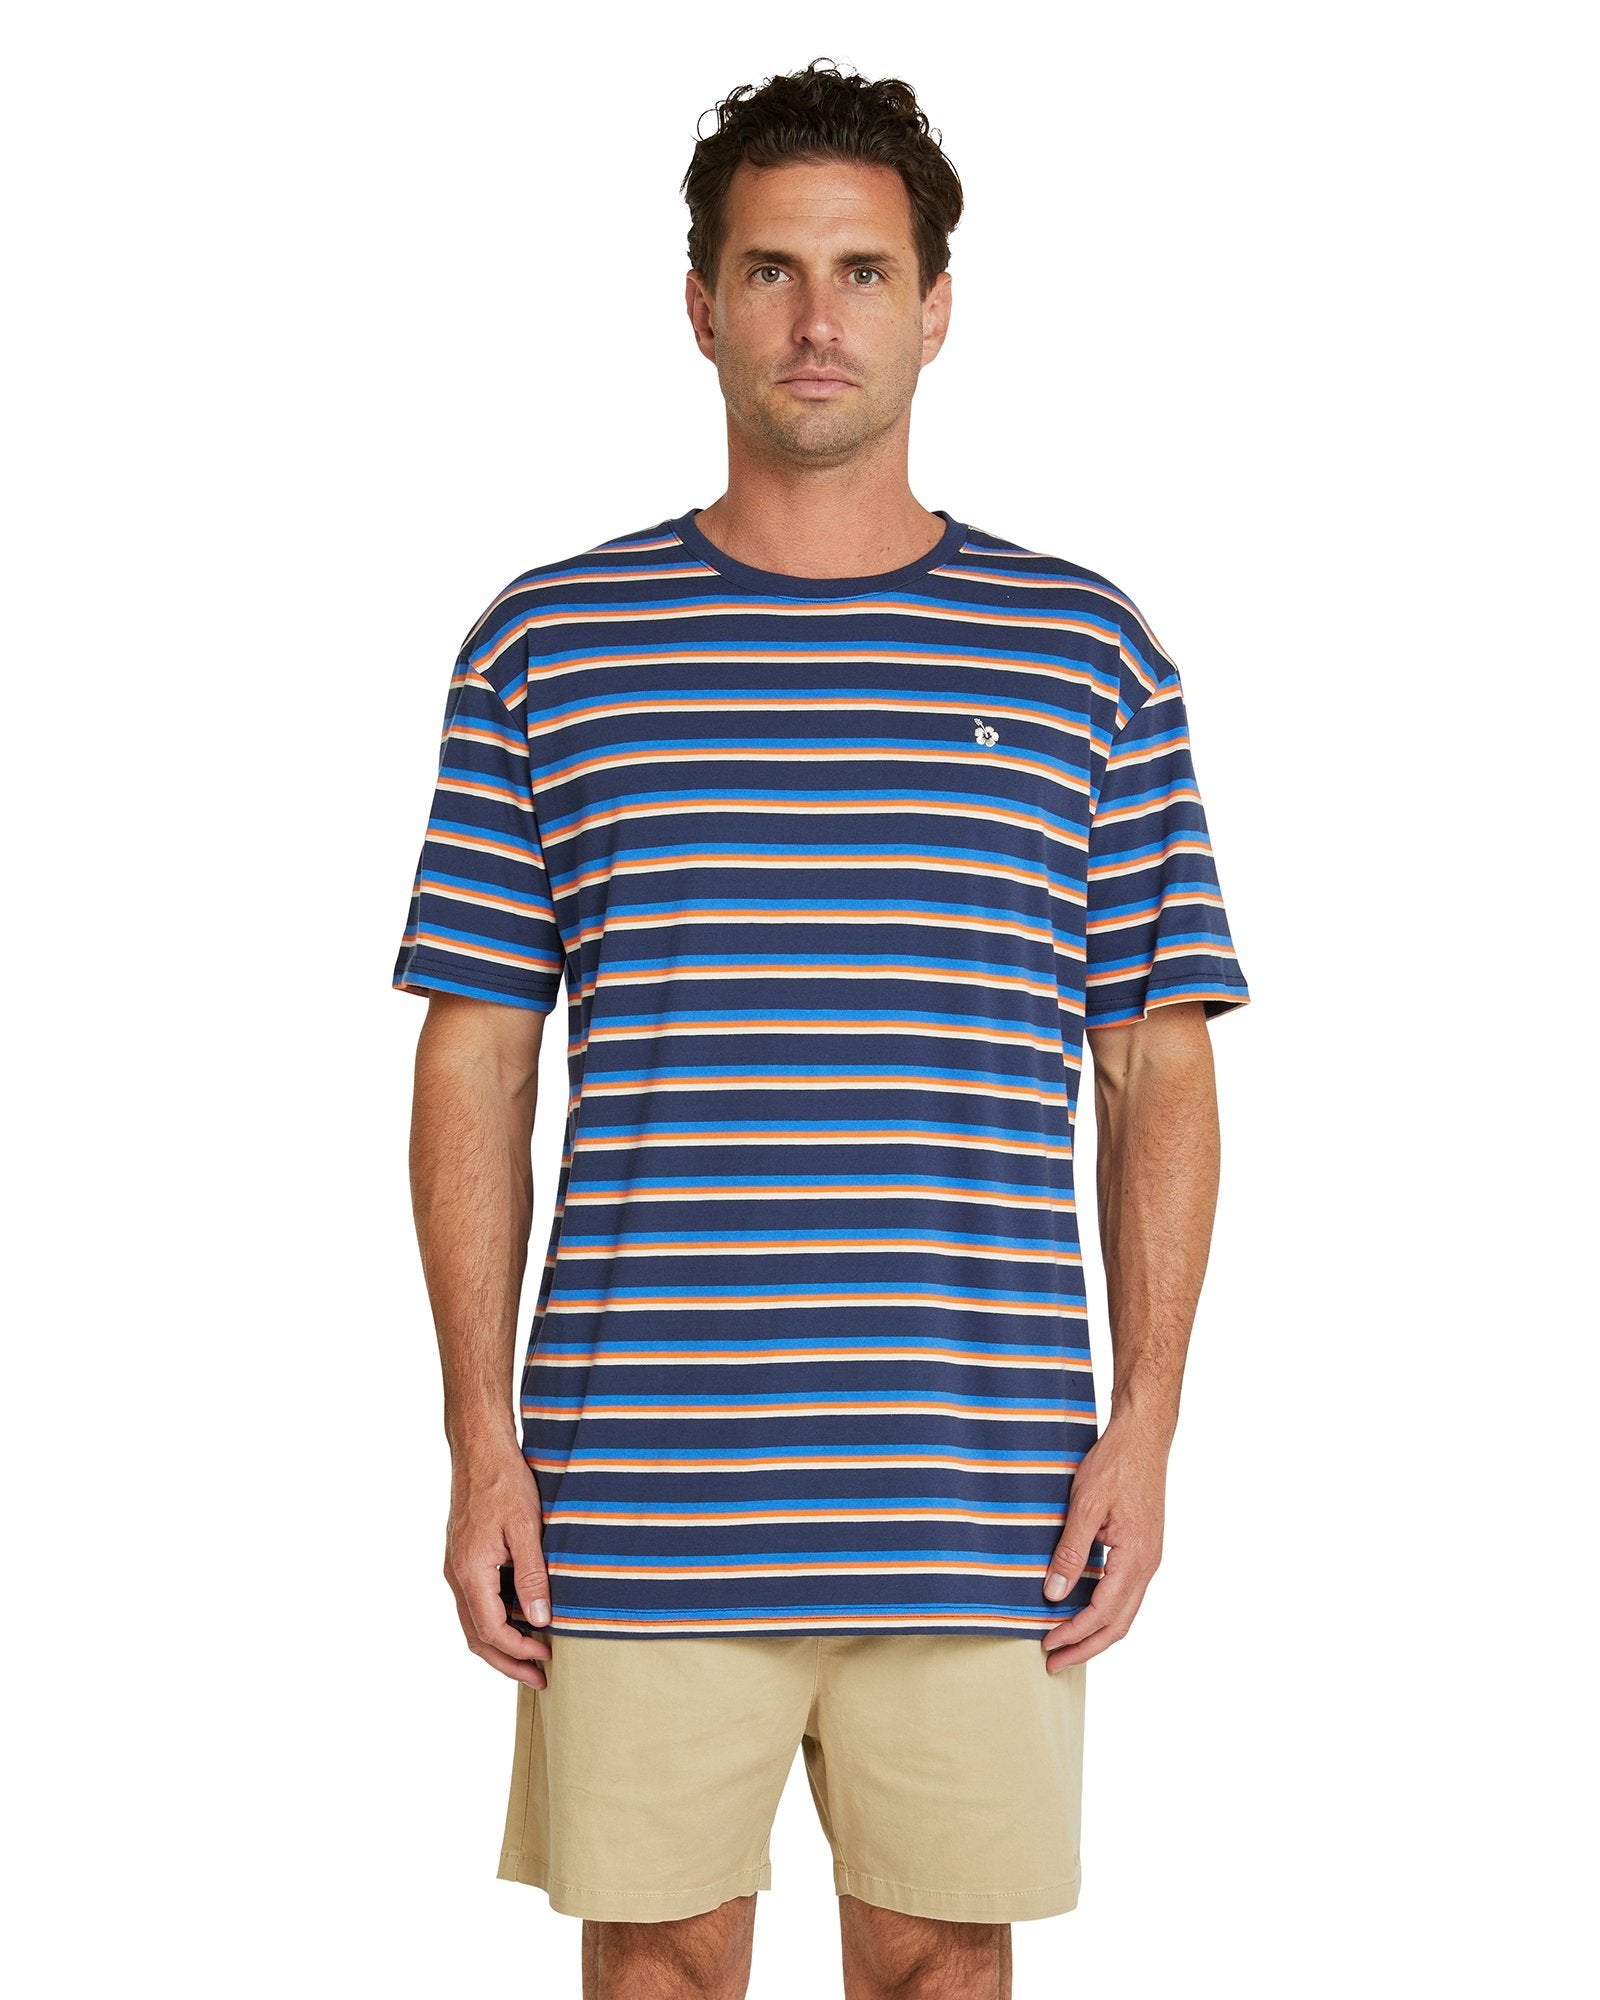 Mens - T-Shirt - Staple Stripe - Navy/Blue